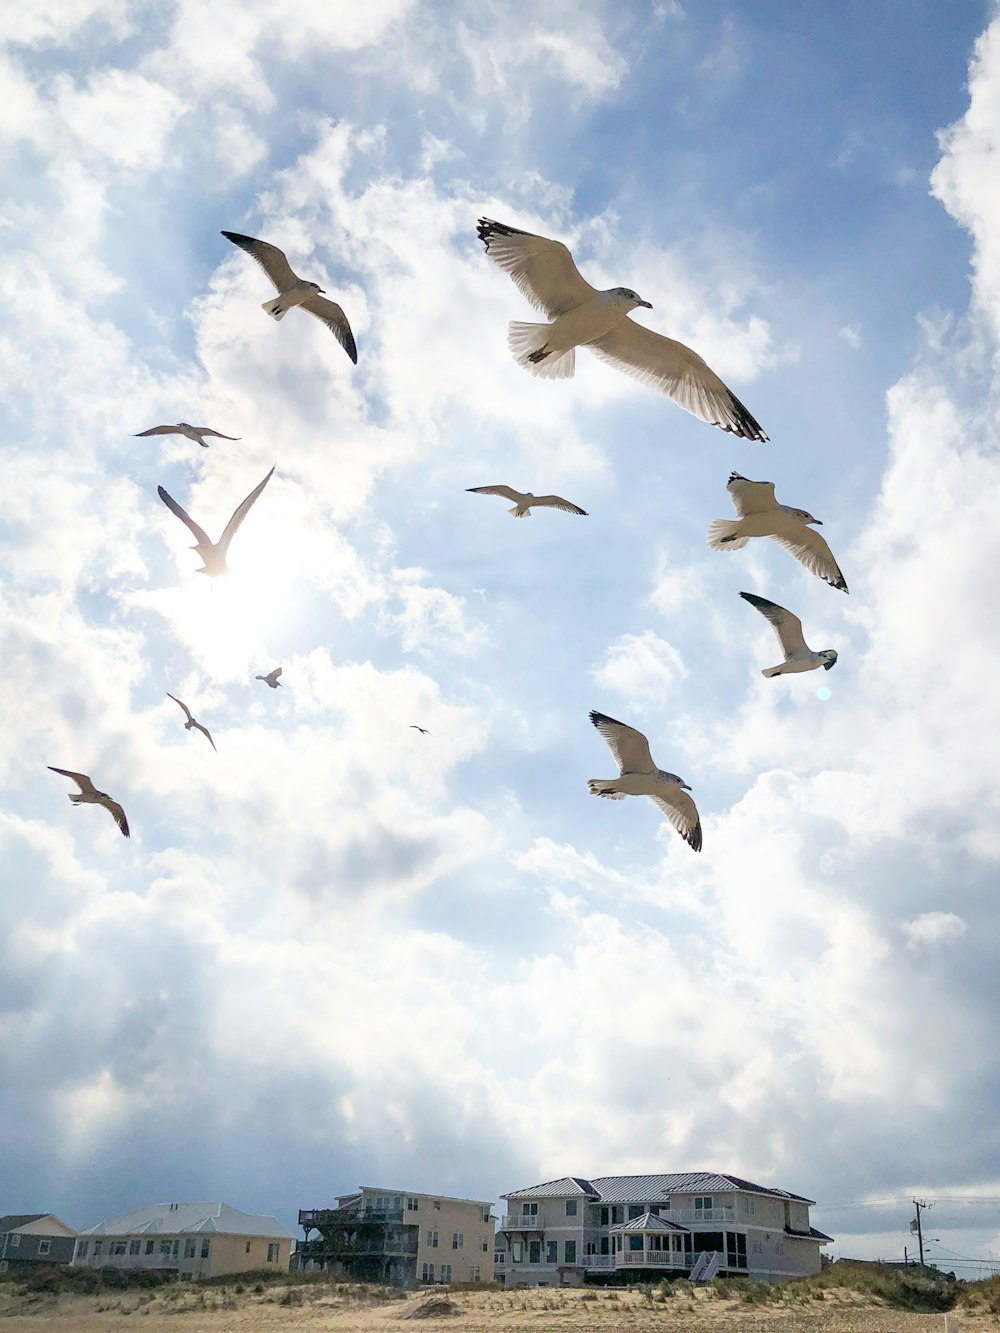 Tiefwinkelfotografie von Vogelschwärmen, die tagsüber unter blauem Himmel fliegen